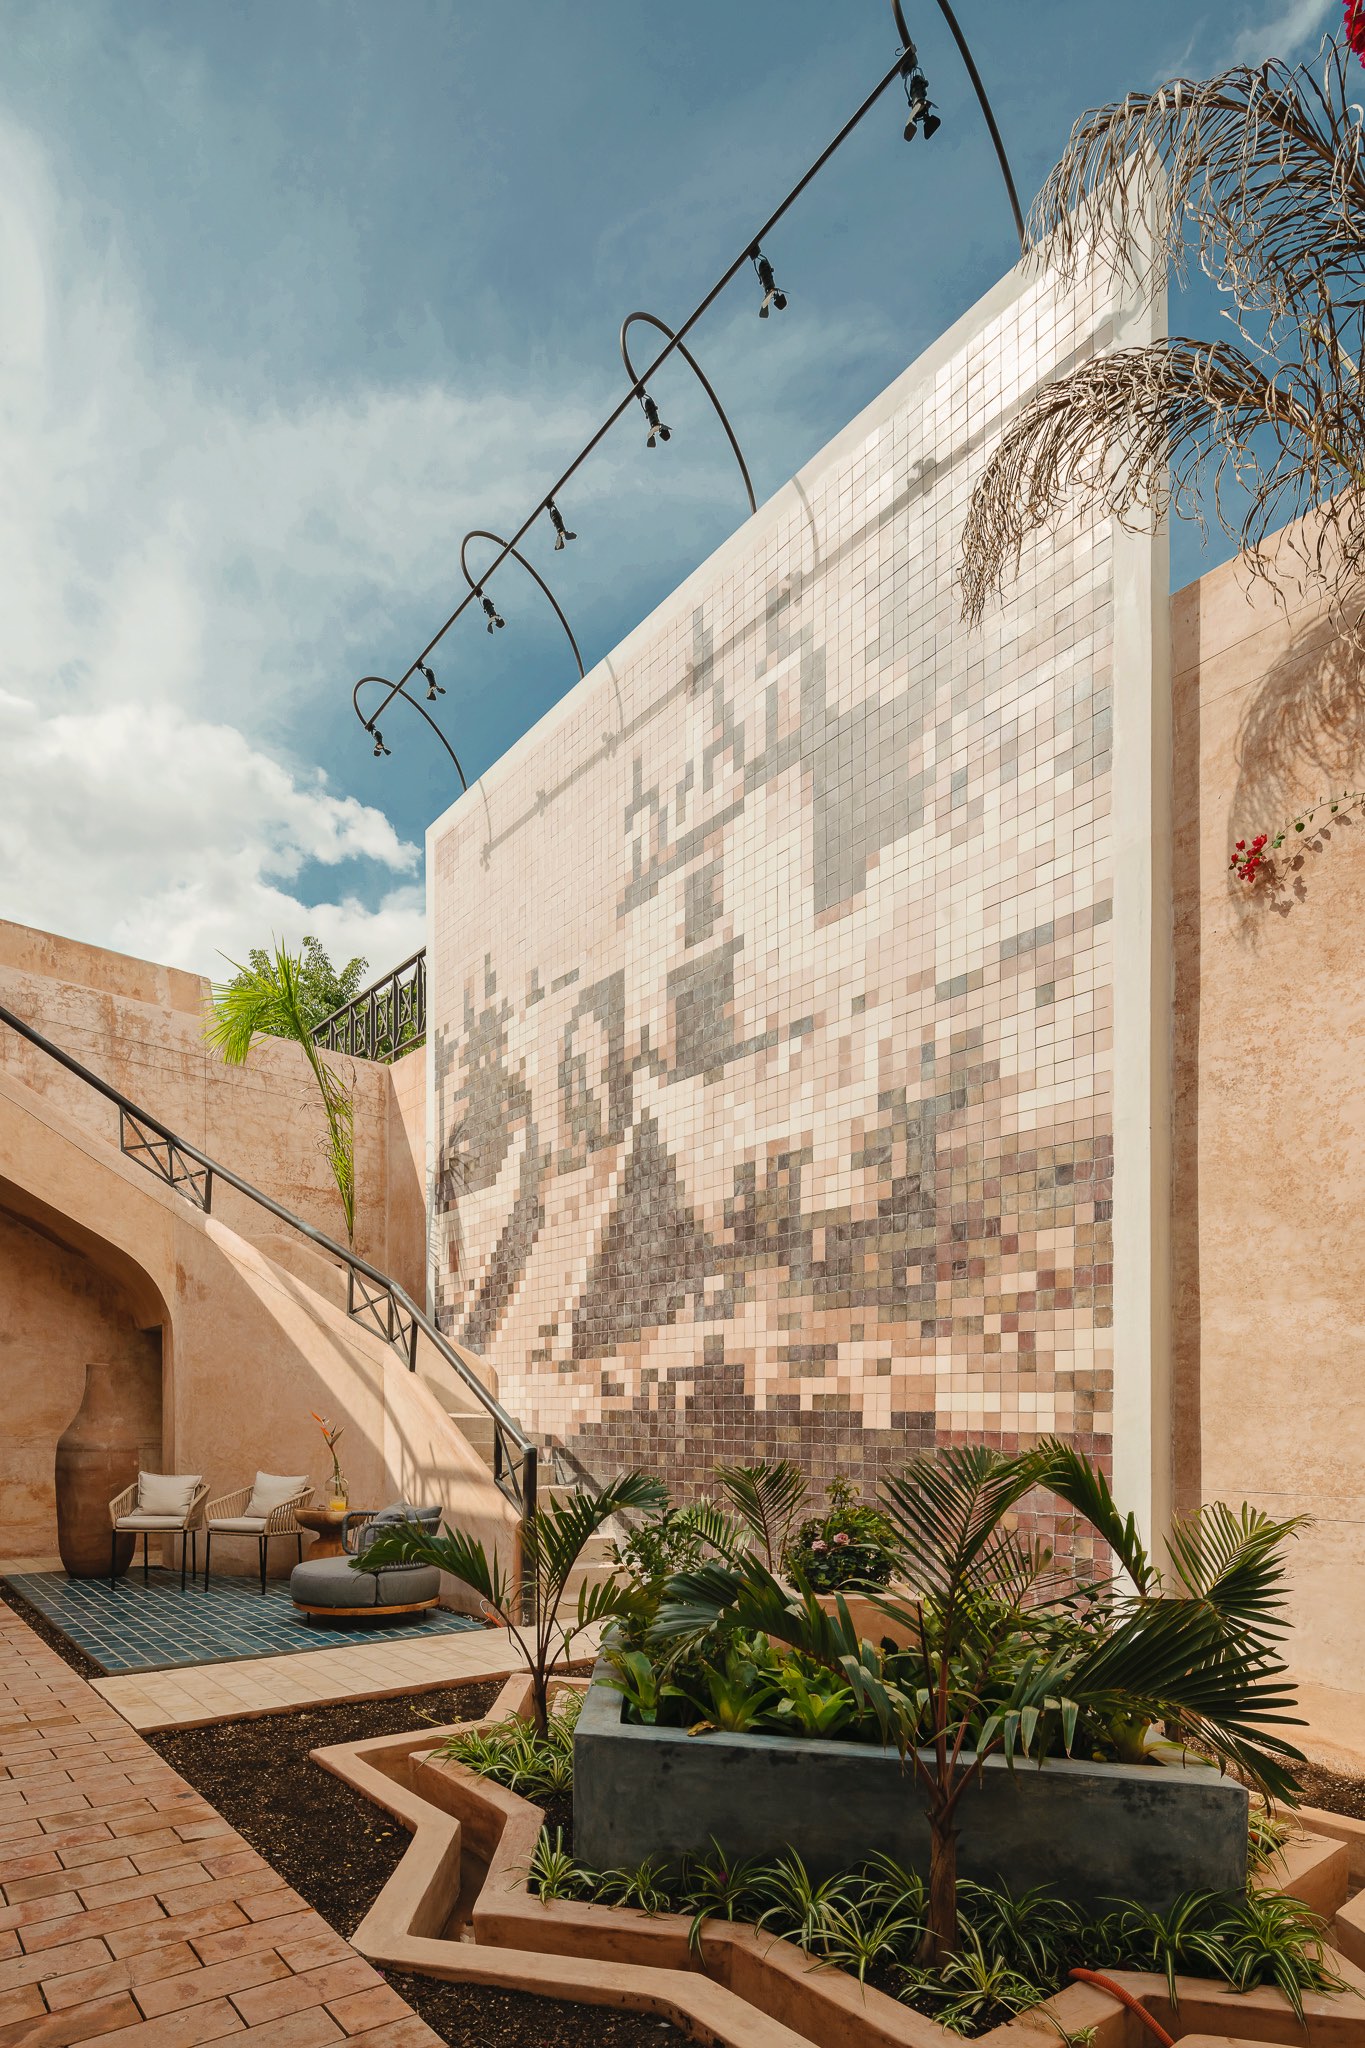 Cigno Hotel-Boutique | Roger González (Renovación arquitectónica) | Mérida, Yucatán